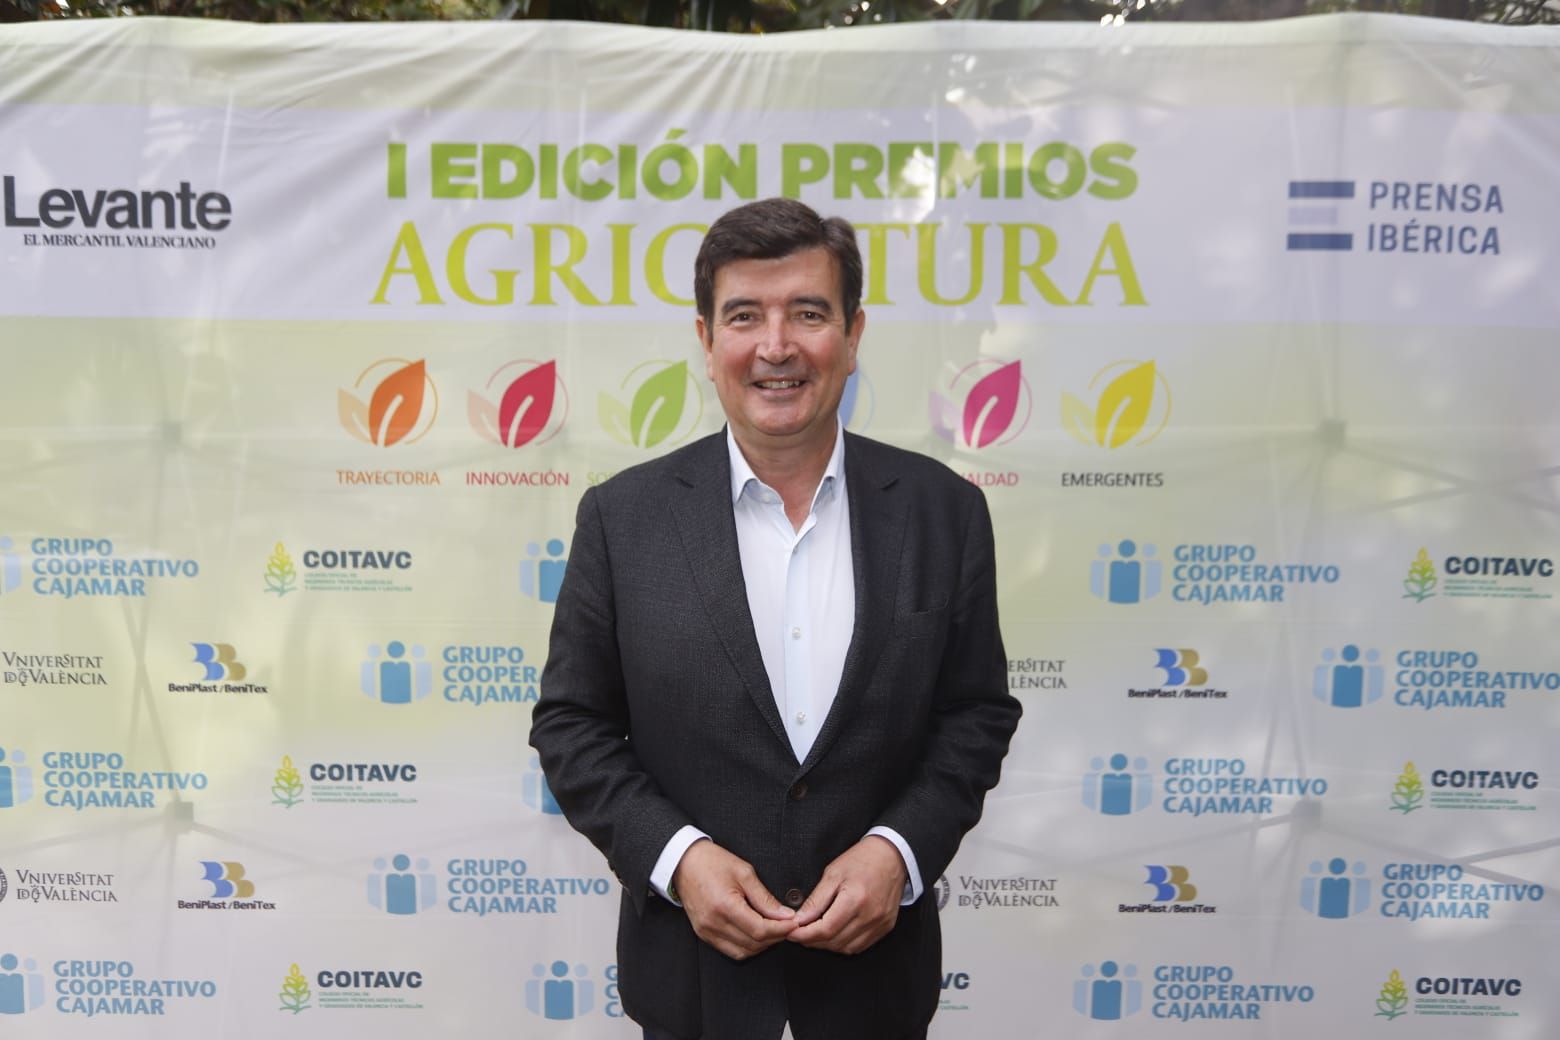 I Edición Premios Agricultura